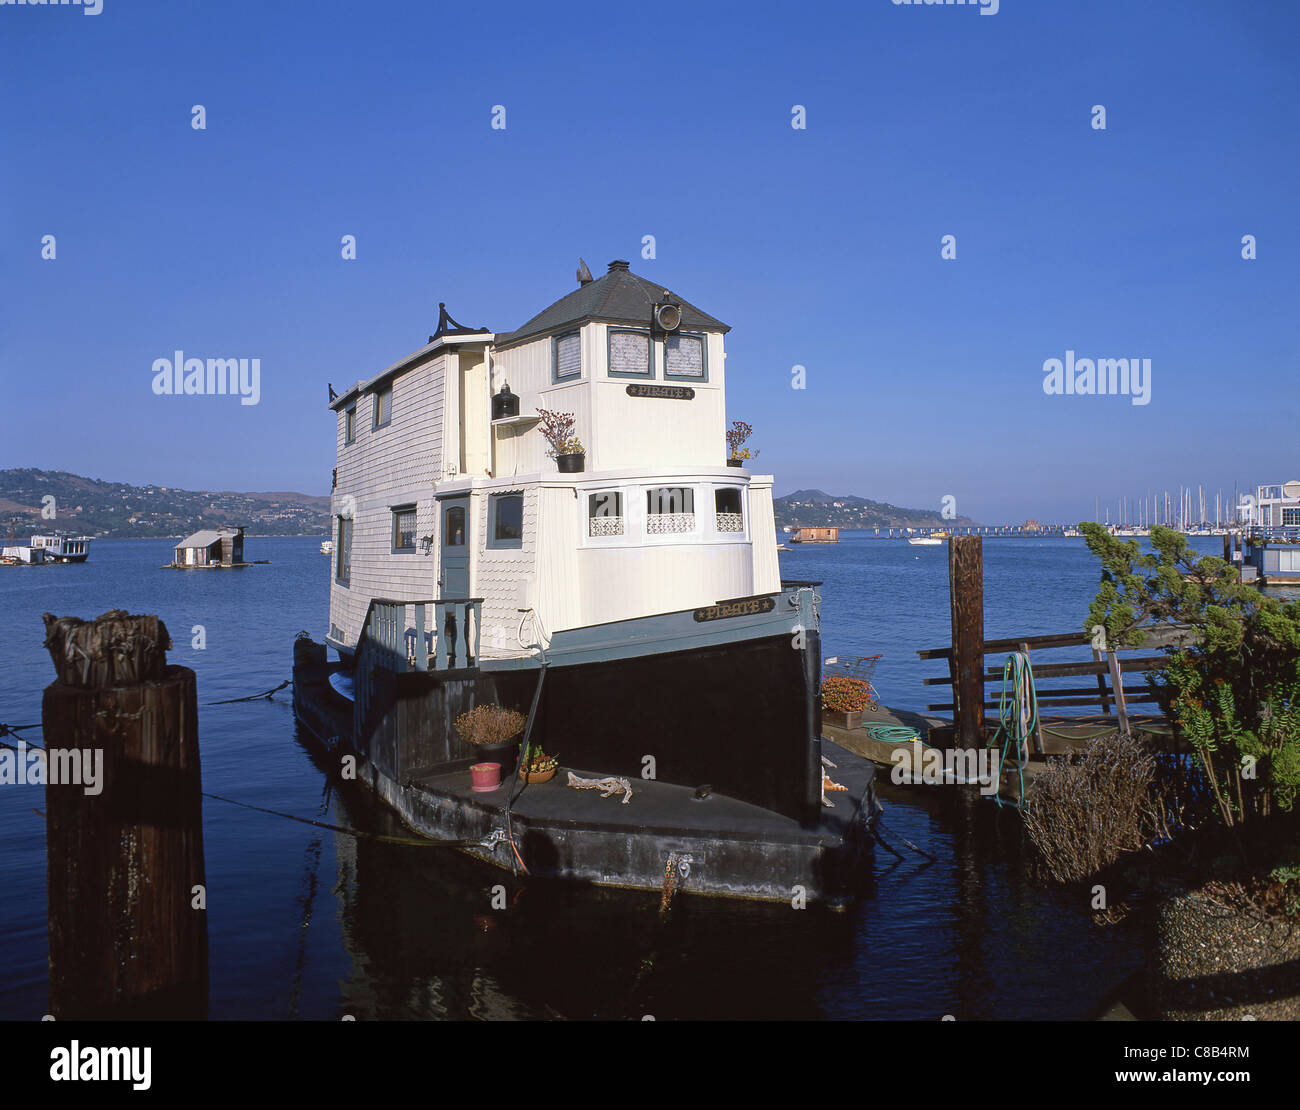 Sausalito houseboats, Waldo Point Harbor, Sausalito, San Francisco Bay Area, Marin County, California, United States of America Stock Photo